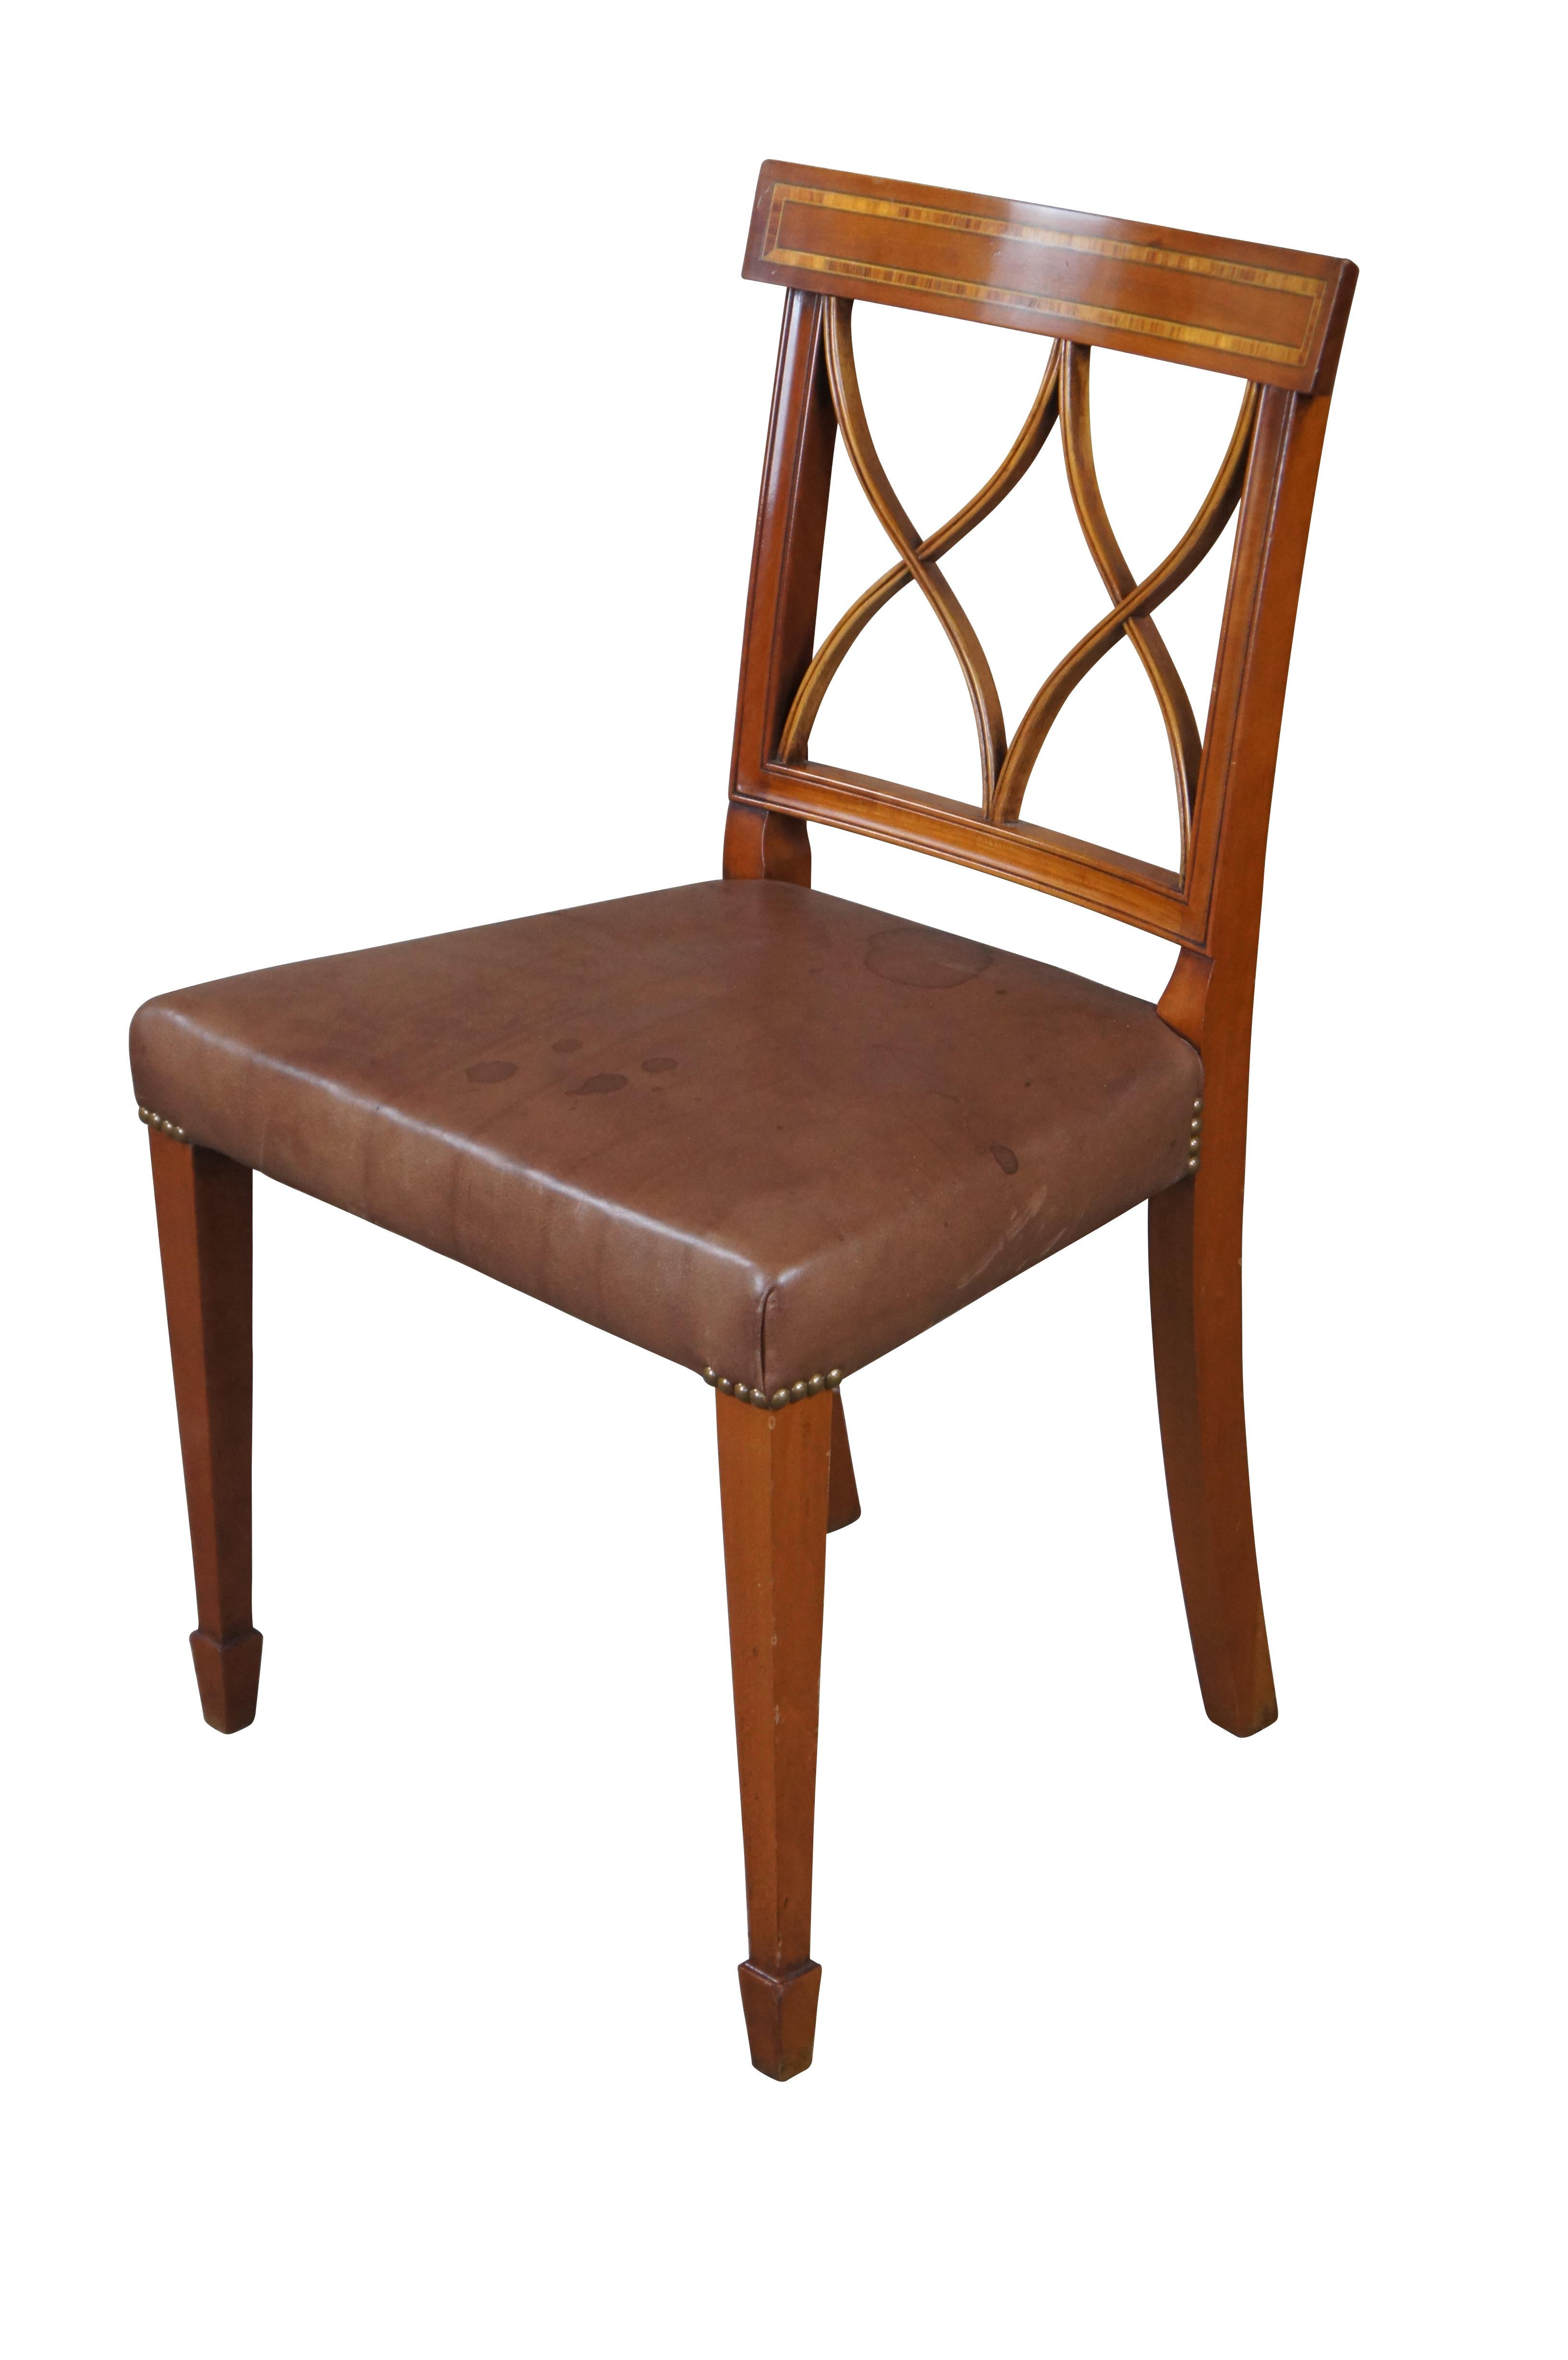 Arthur Brett English Sheraton Style Mahogany Inlaid Leather Dining Side Chair, #2013 2313.  Il se compose d'une traverse courbée avec bandes transversales, d'un dossier incrusté d'un double X percé et d'une assise en cuir marron.  Le cuir est